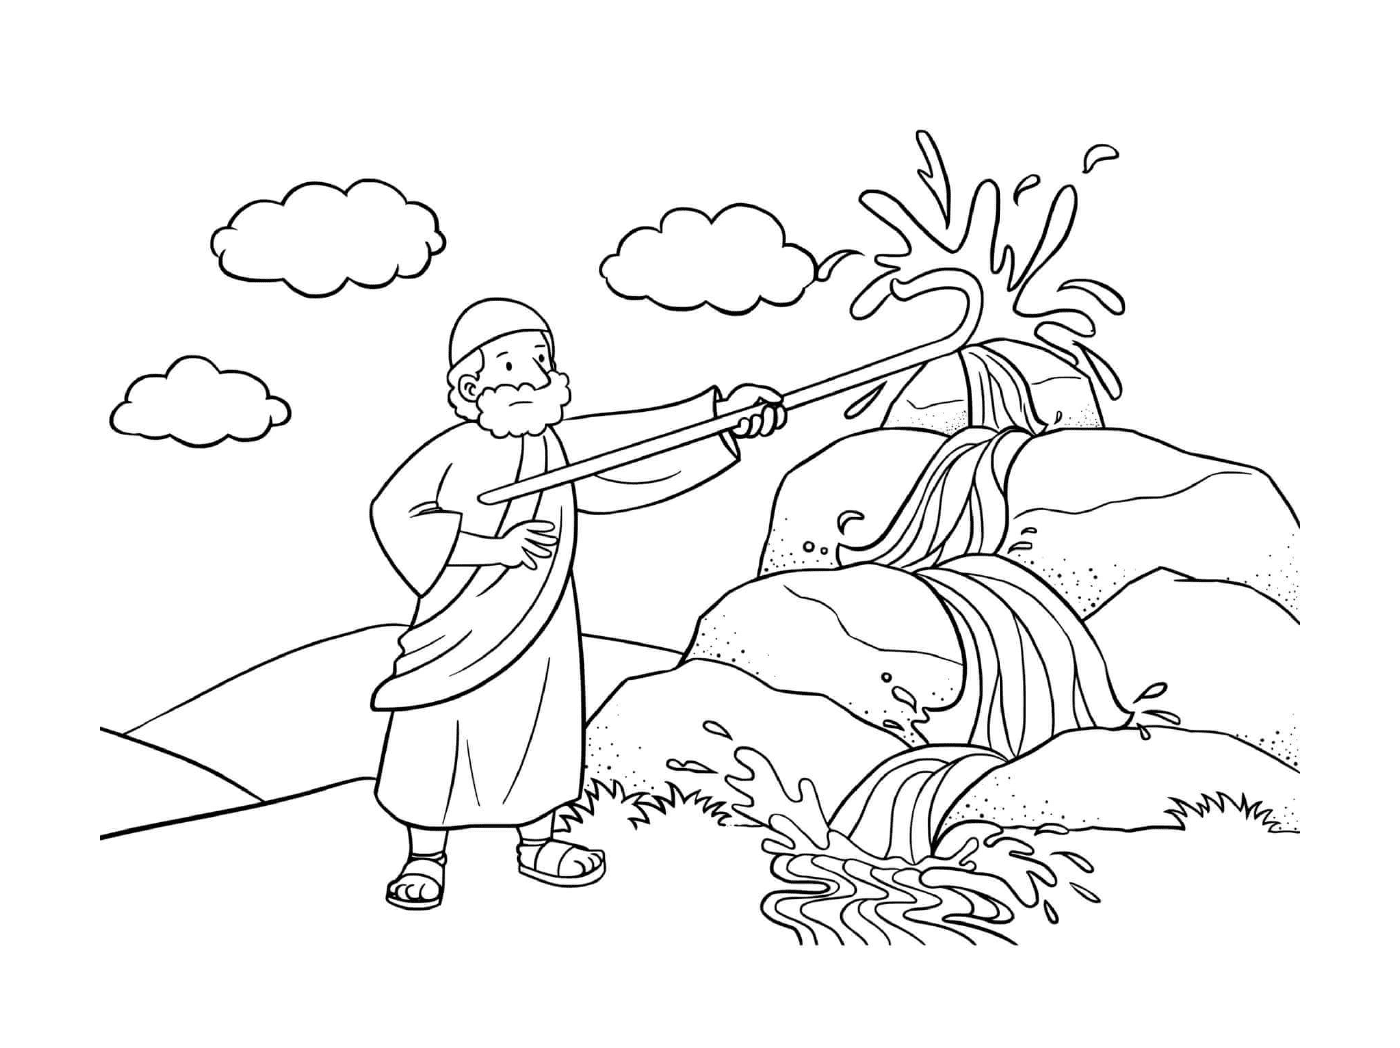  Roca de Moisés, hombre con una manguera de fuego 